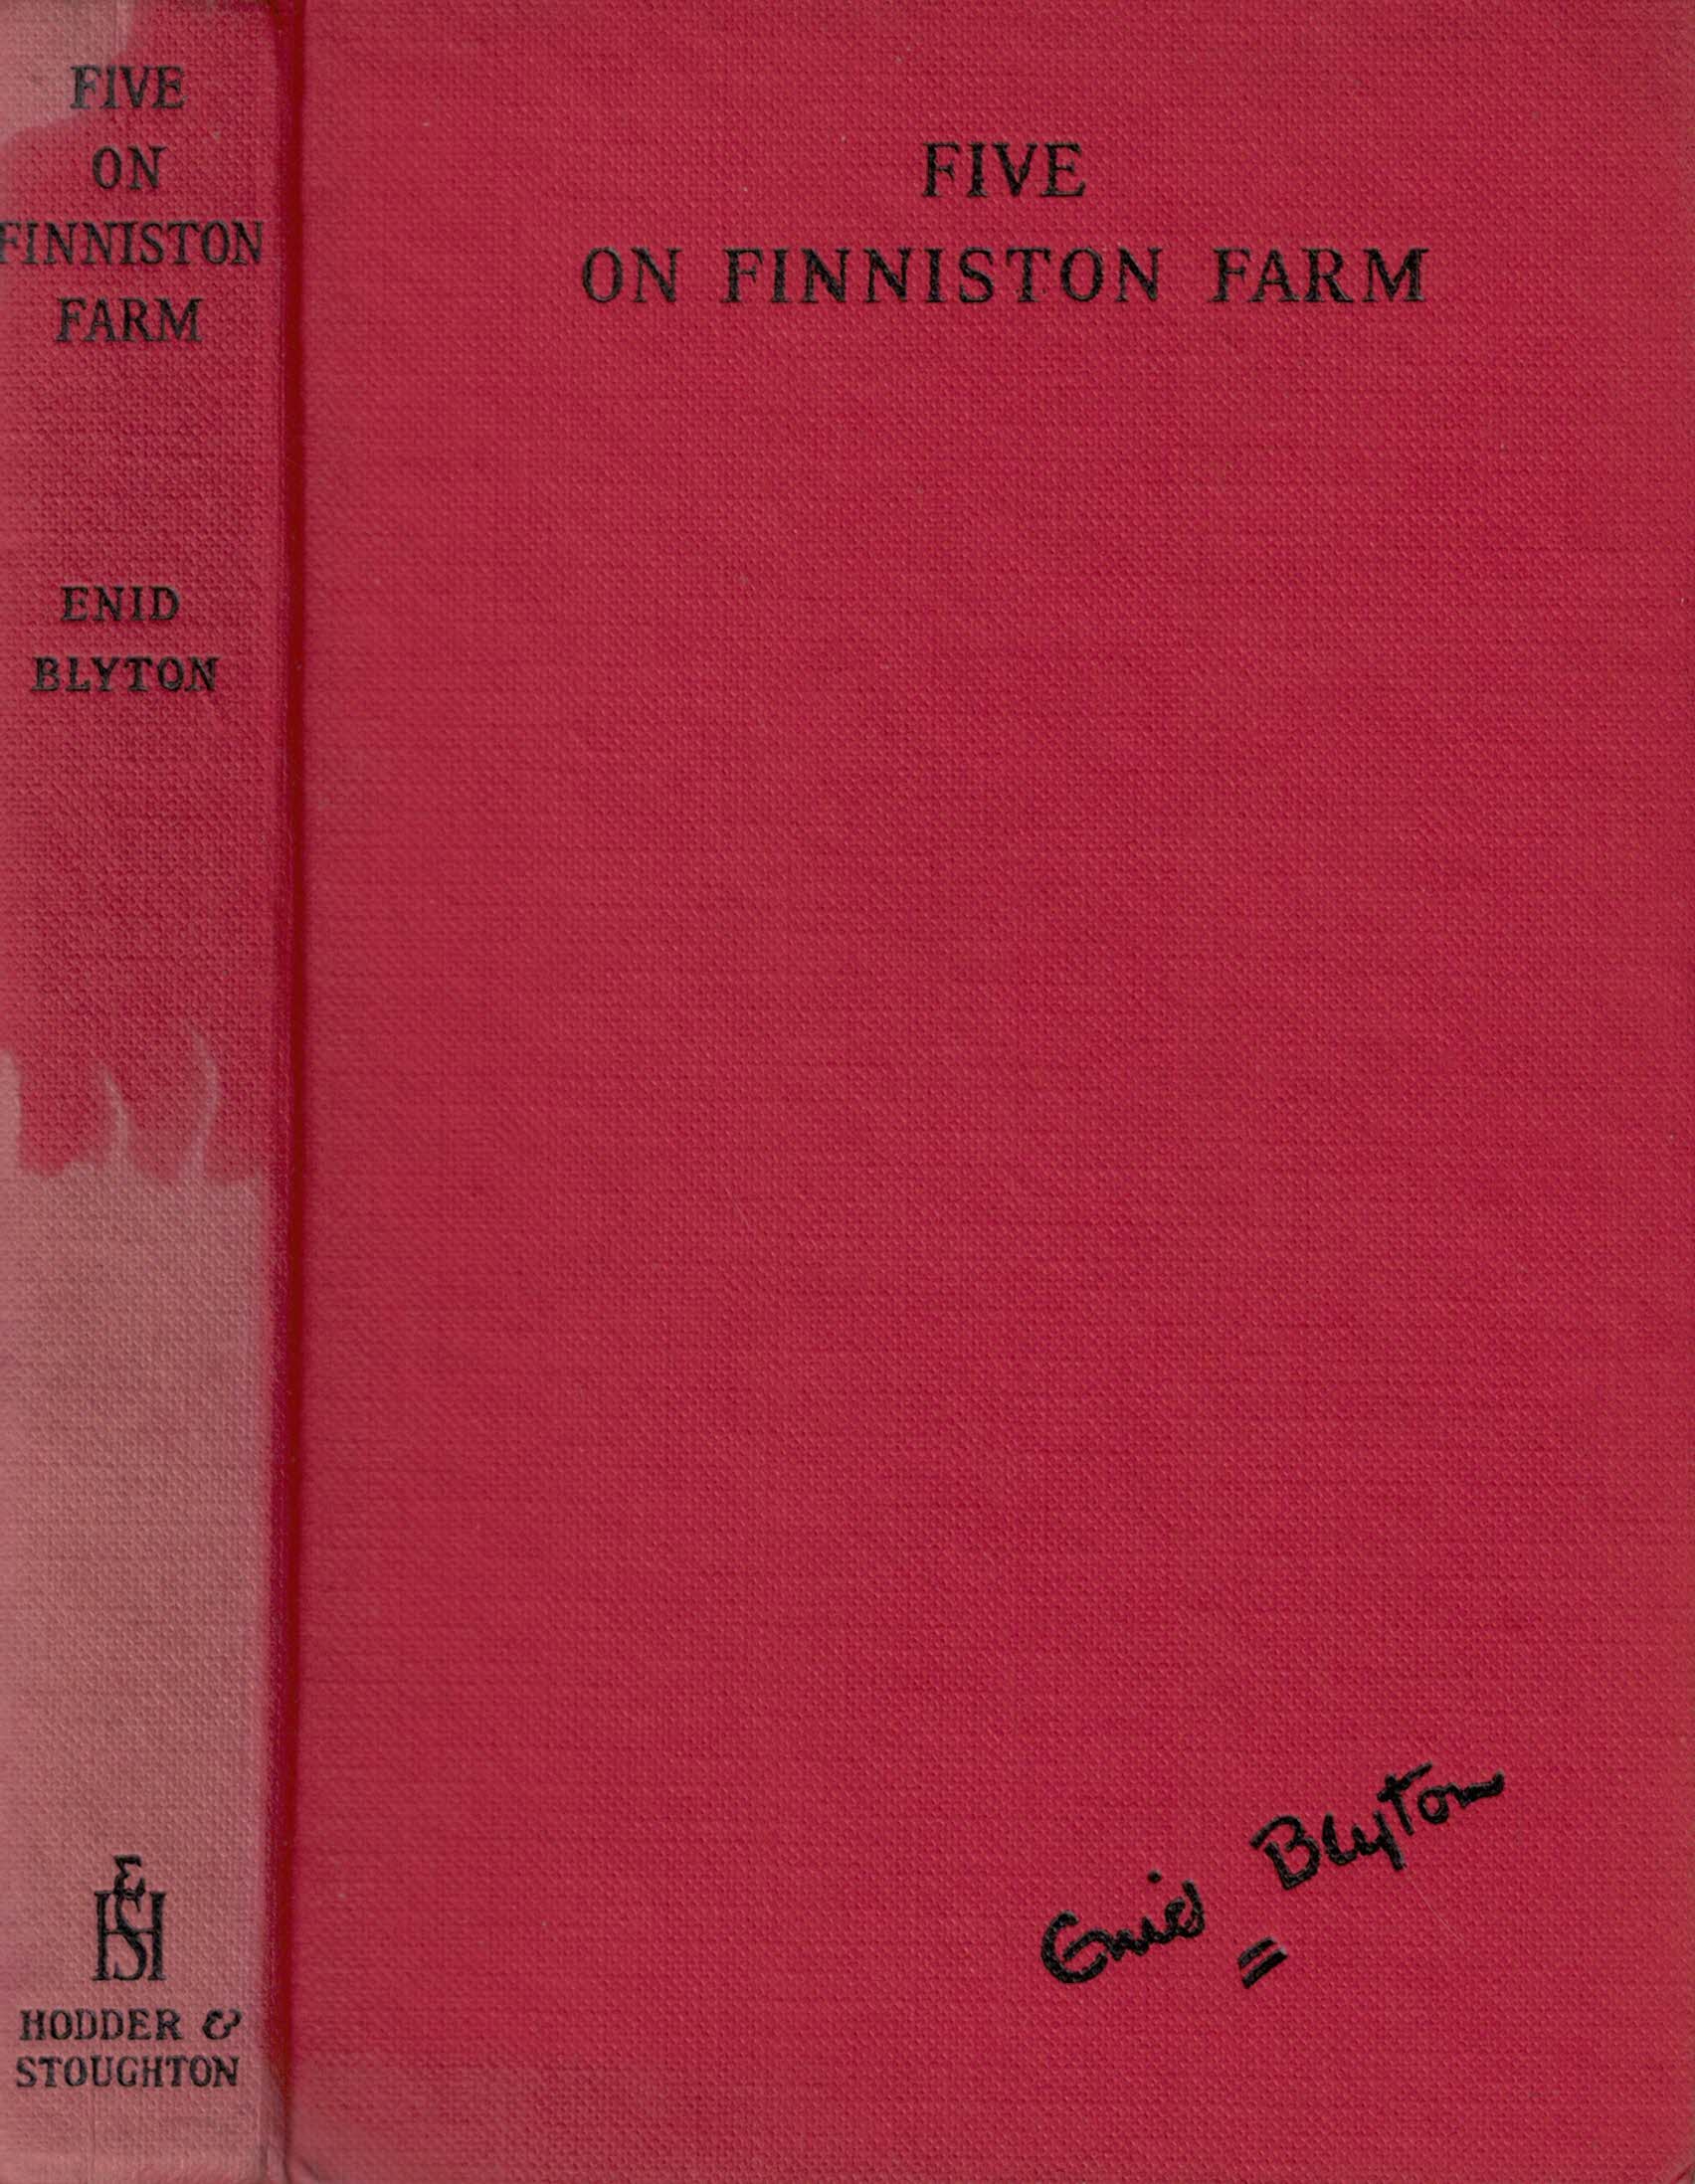 Five on Finniston Farm. 1960.